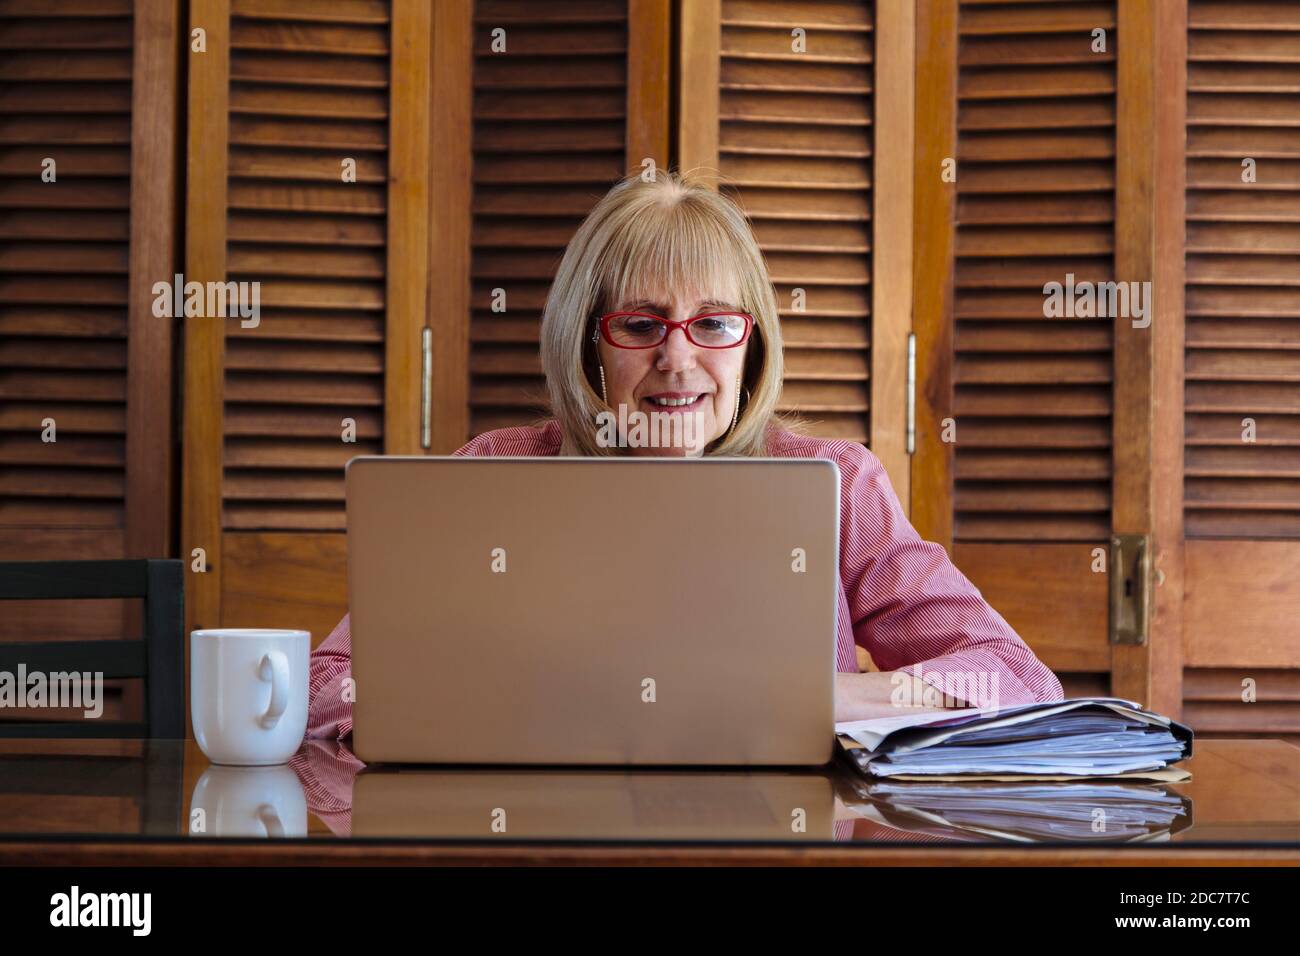 Ältere Frau, die mit einem Laptop arbeitet und Papiere sucht. Sie ist drinnen in einem Holztisch mit einem silbernen Computer. Vorderansicht. Stockfoto